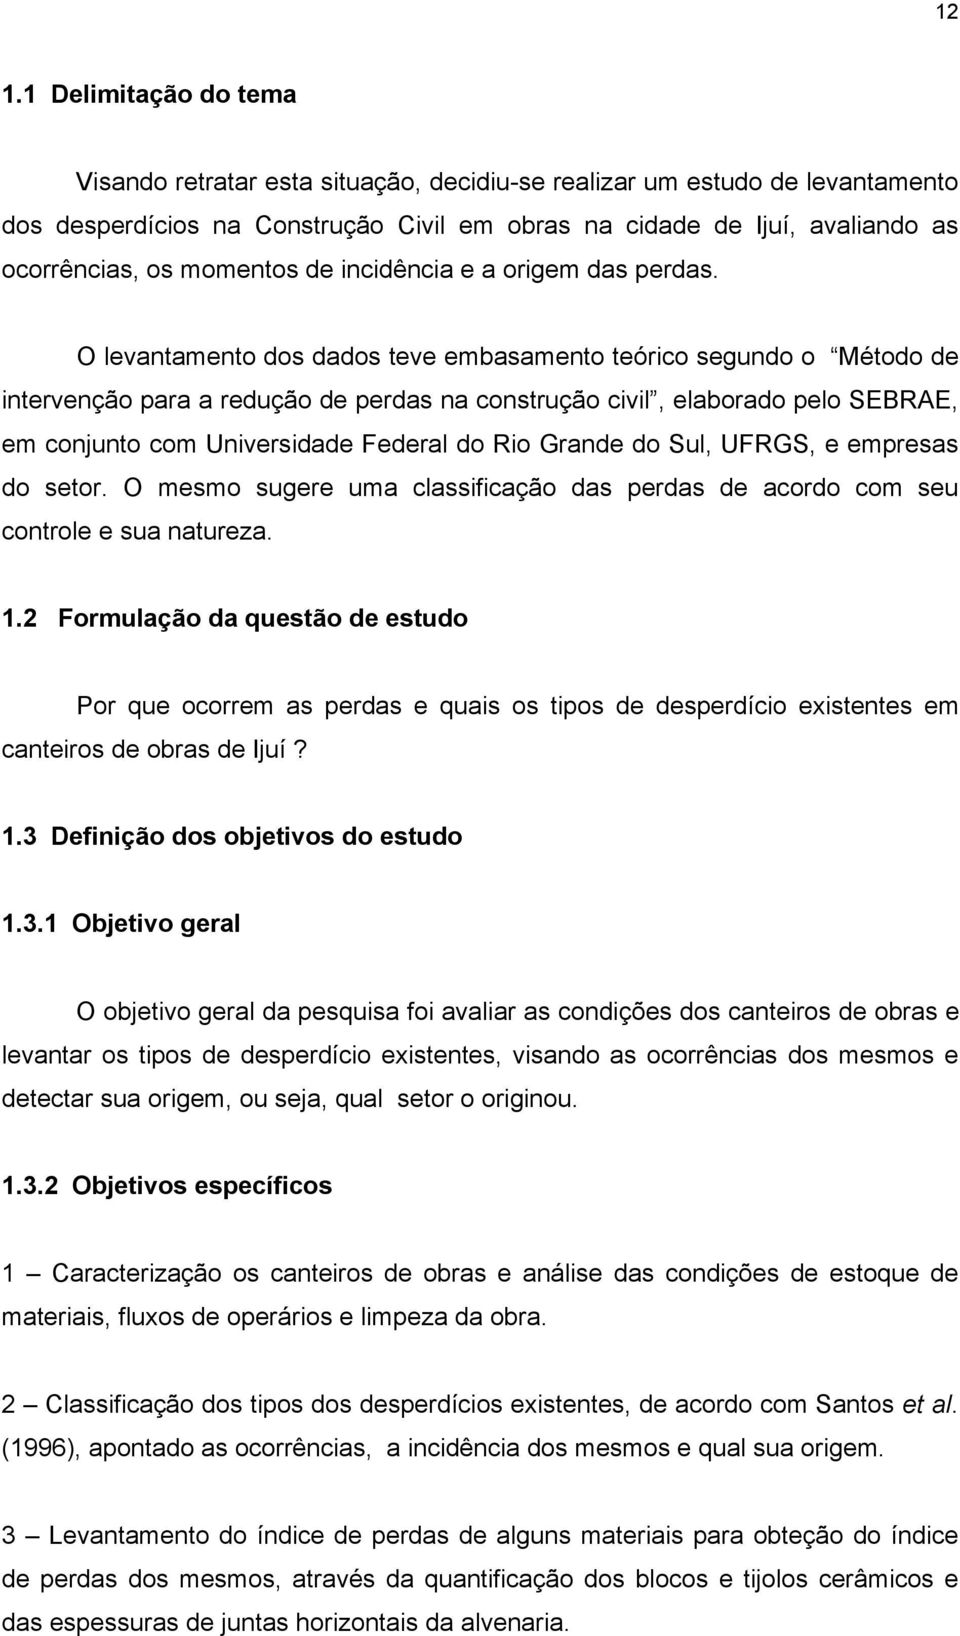 O levantamento dos dados teve embasamento teórico segundo o Método de intervenção para a redução de perdas na construção civil, elaborado pelo SEBRAE, em conjunto com Universidade Federal do Rio